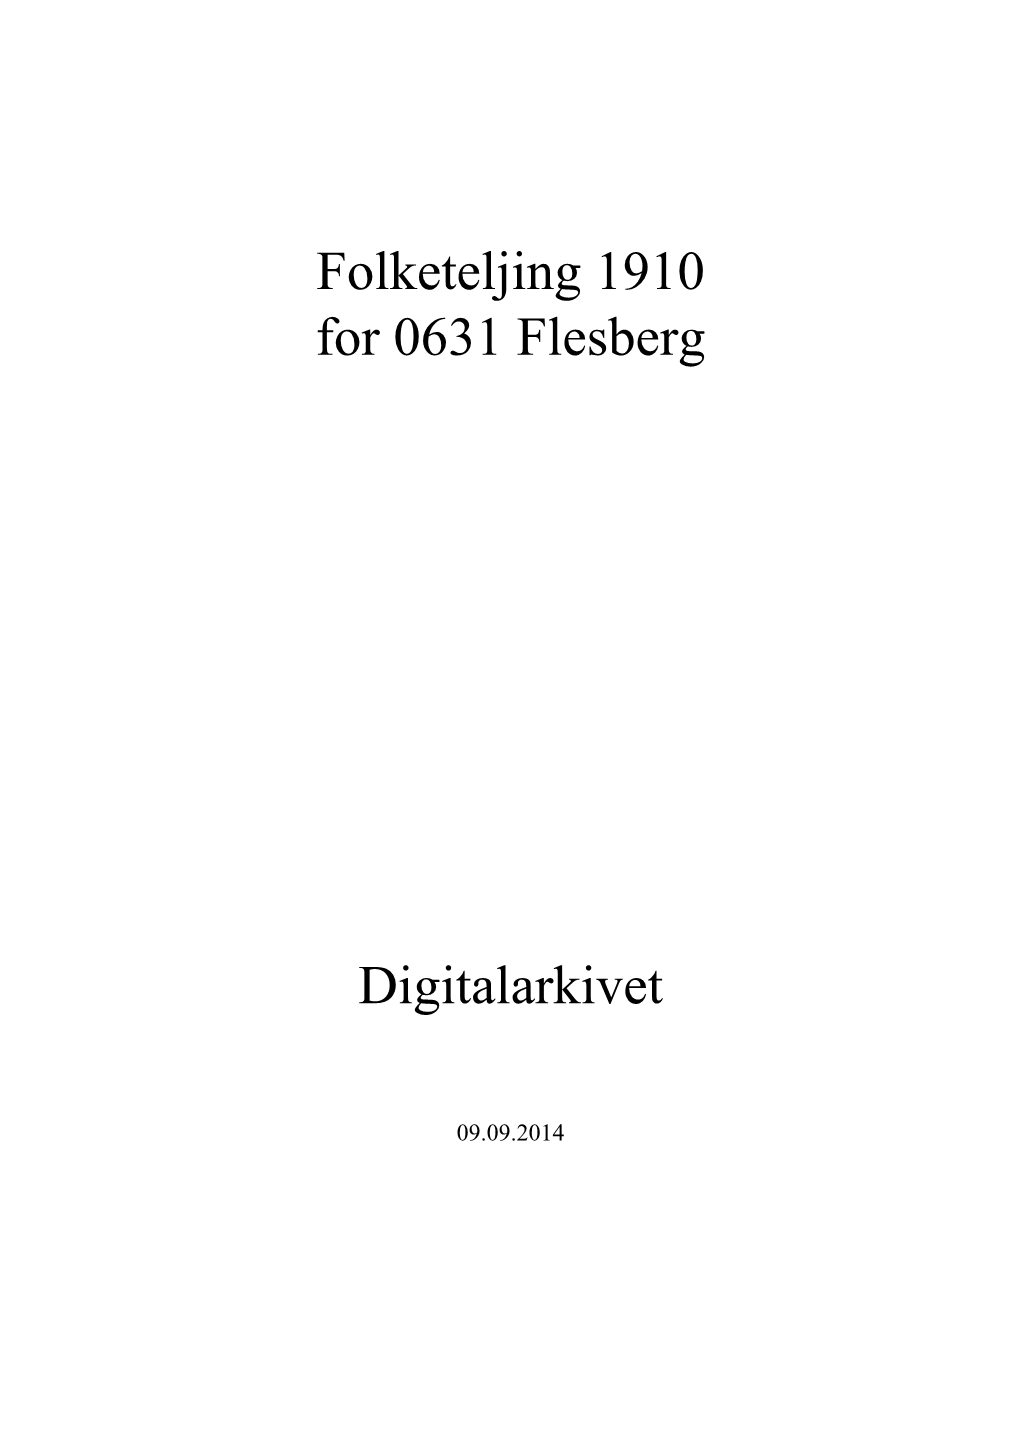 Folketeljing 1910 for 0631 Flesberg Digitalarkivet